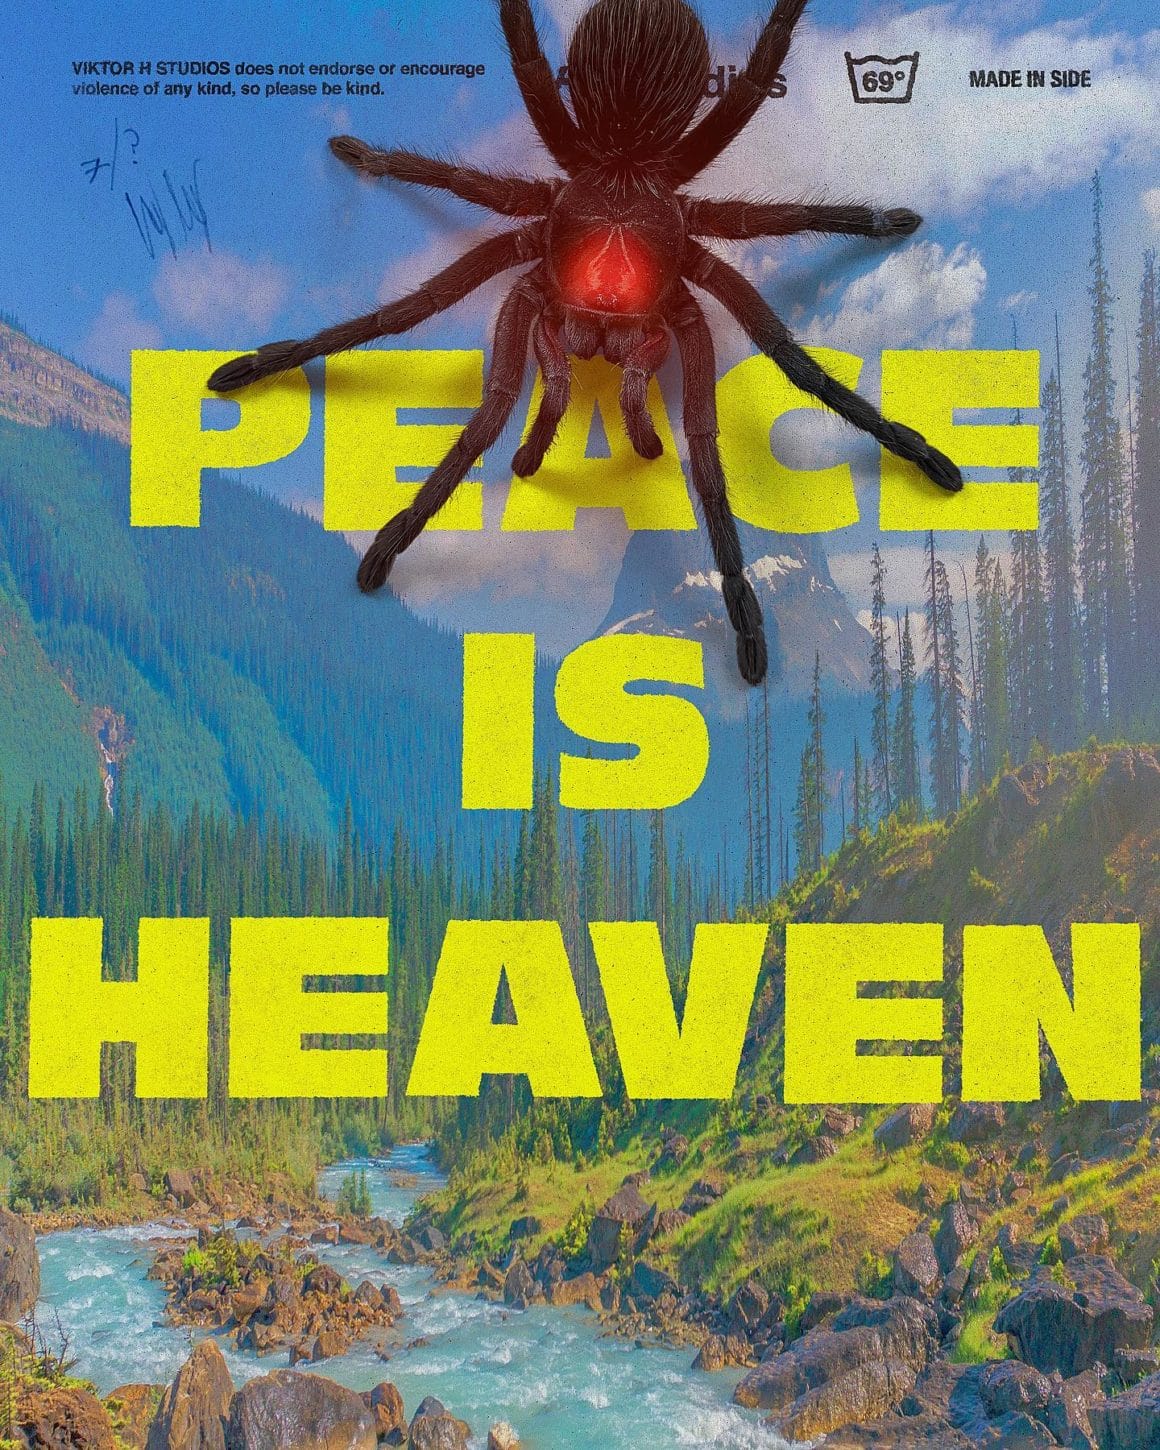 Affiche d'une forêt américaine avec la phrase en jaune "Peace is heaven" (la paix est le paradis" Sur la photo, nous pouvons observer une araignée noire aux yeux rouges se positionner